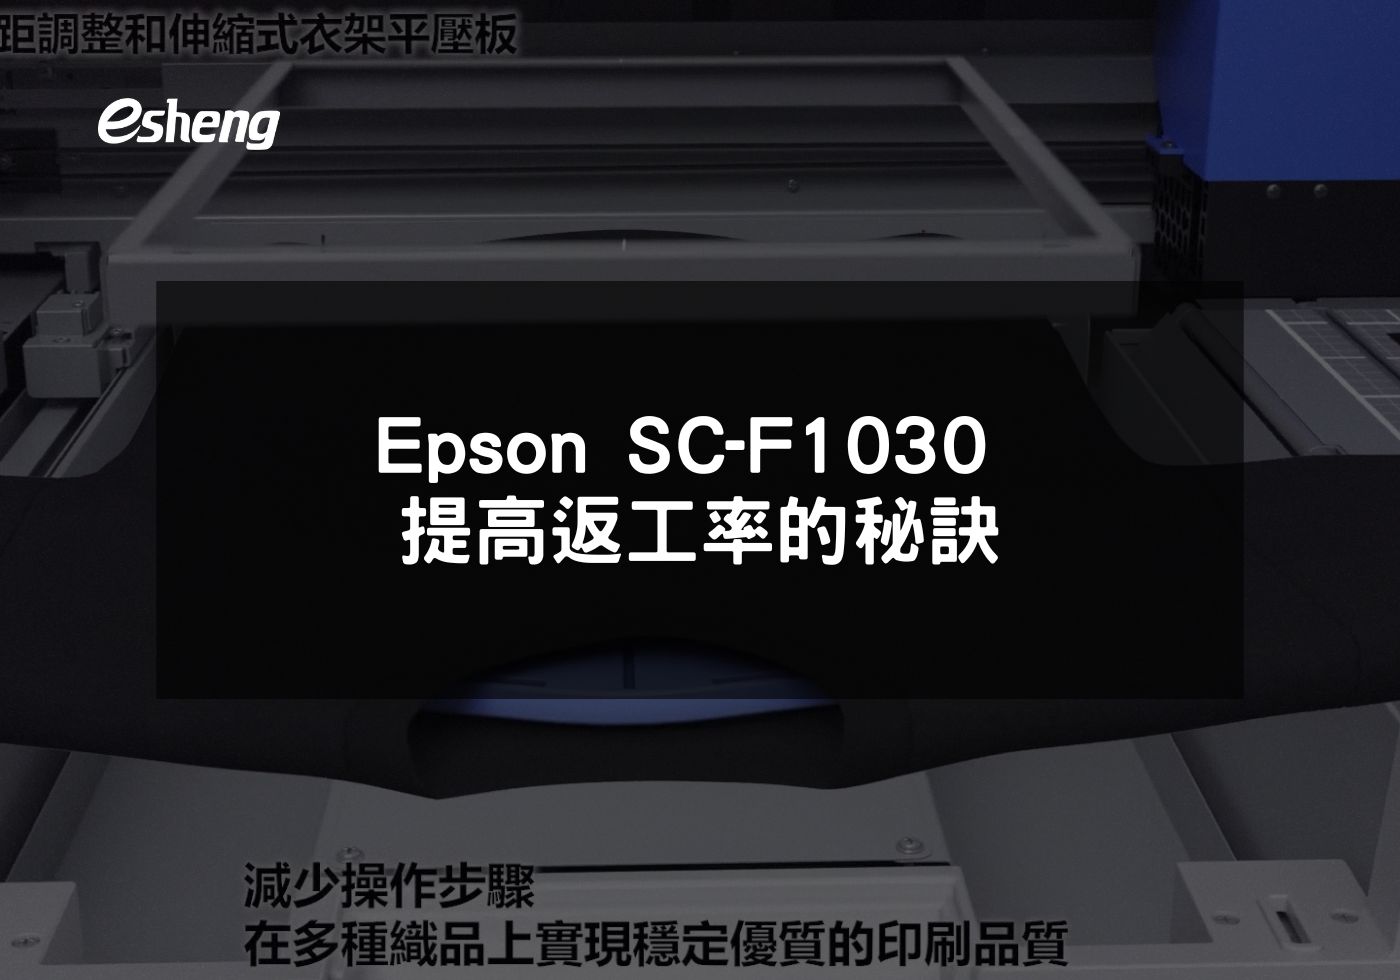 您目前正在查看 Epson SC-F1030 提高返工率的秘訣